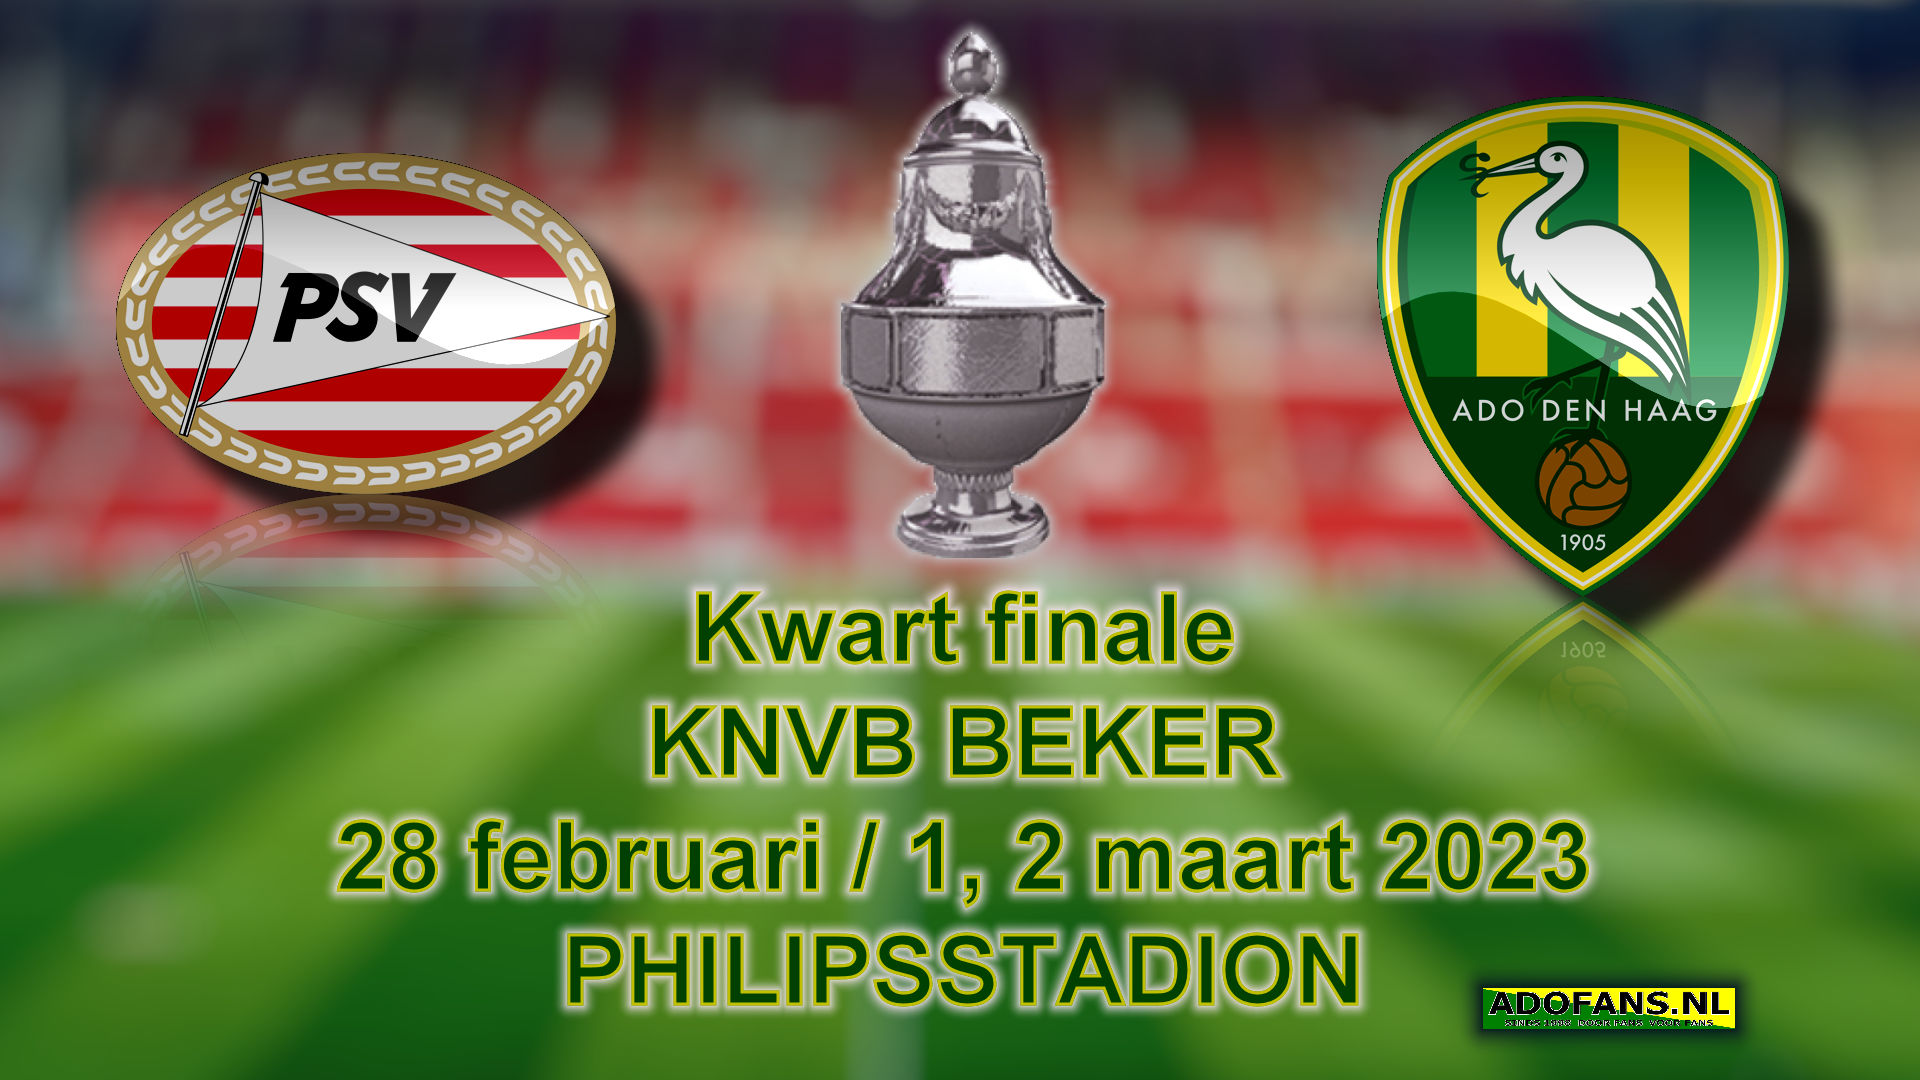 Kwartfinale KNVB Beker PSV ADO DenHaag